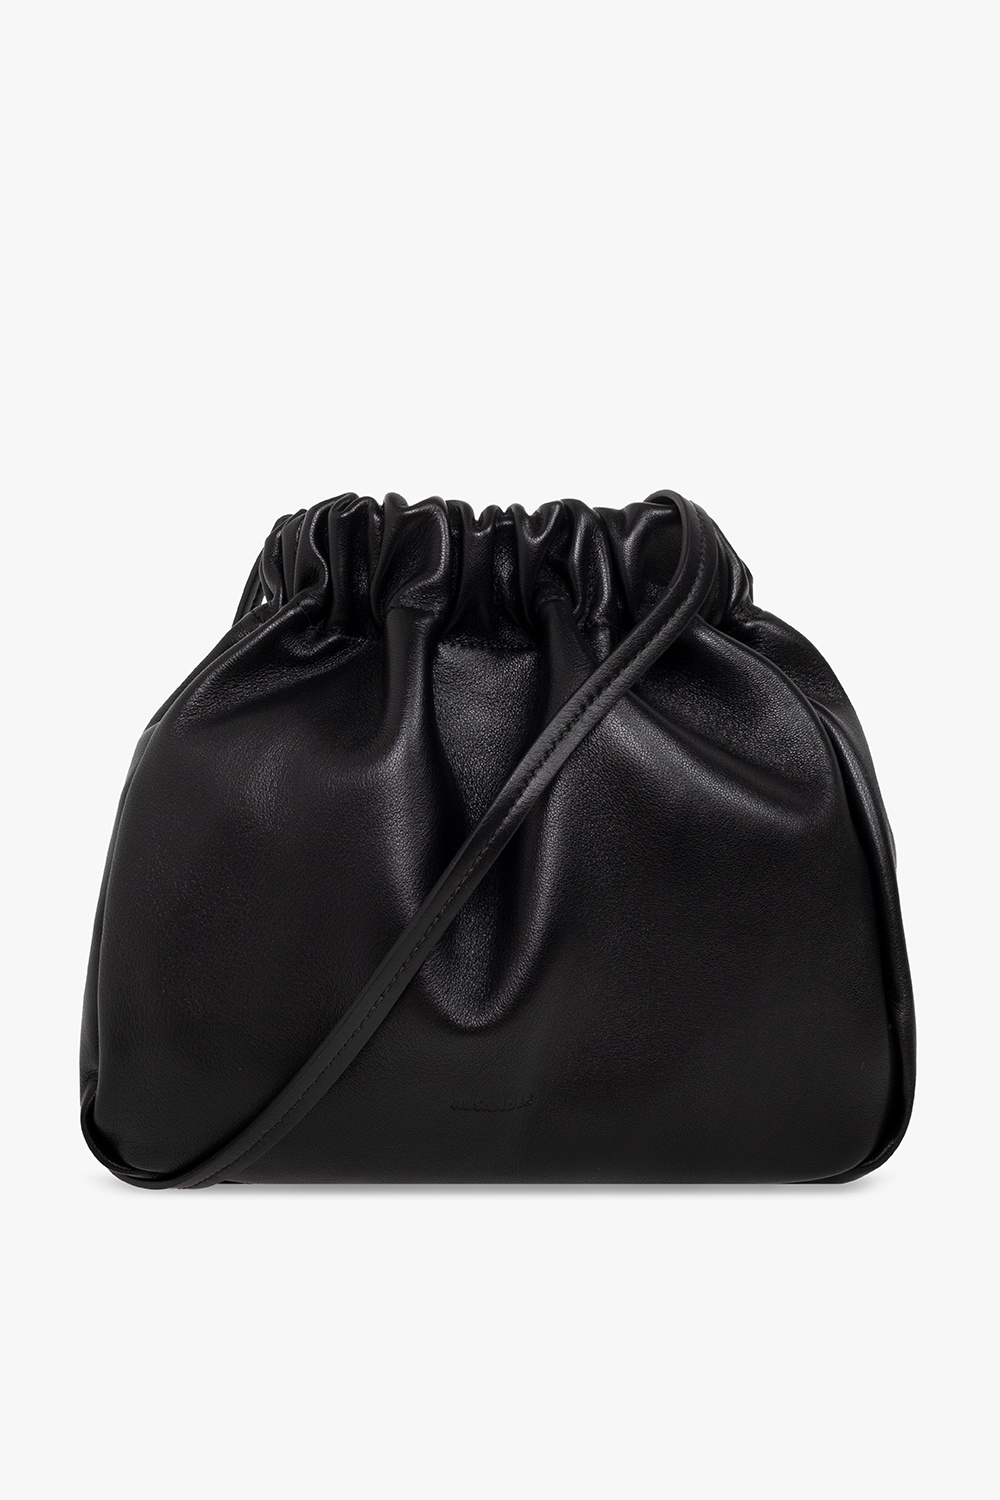 JIL SANDER ‘Scrunch Small’  bucket shoulder bag